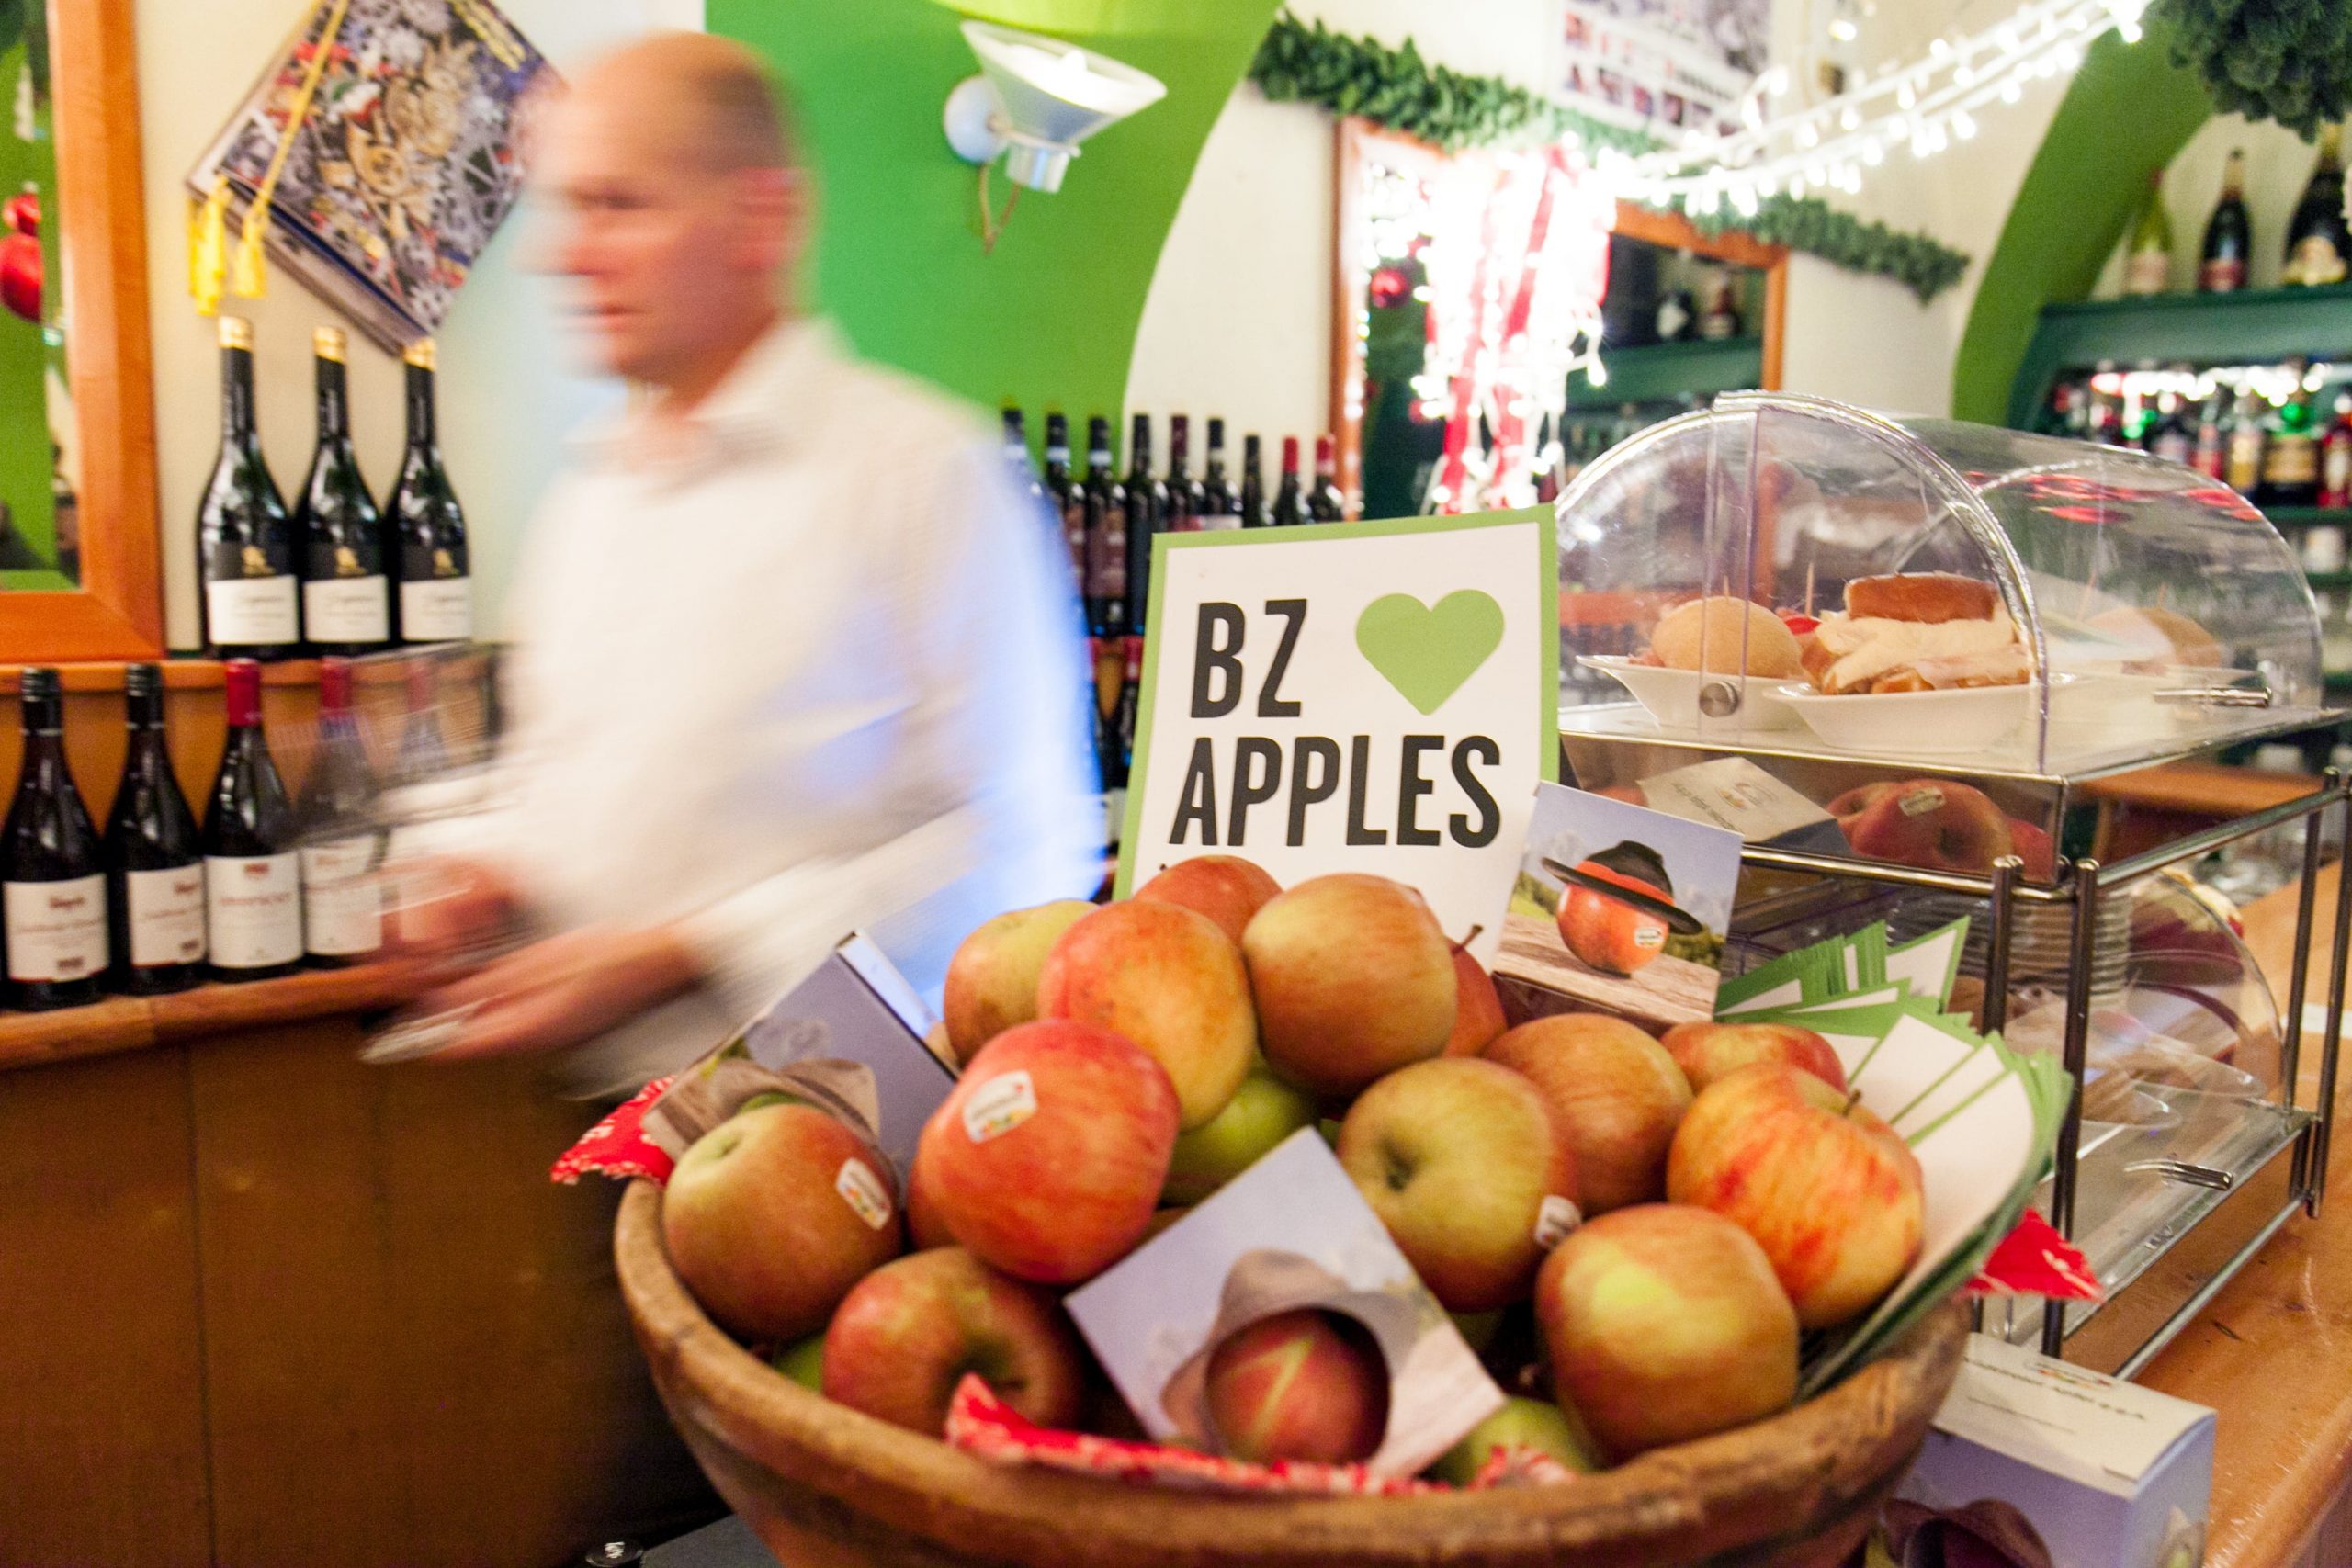 Bolzano loves apples